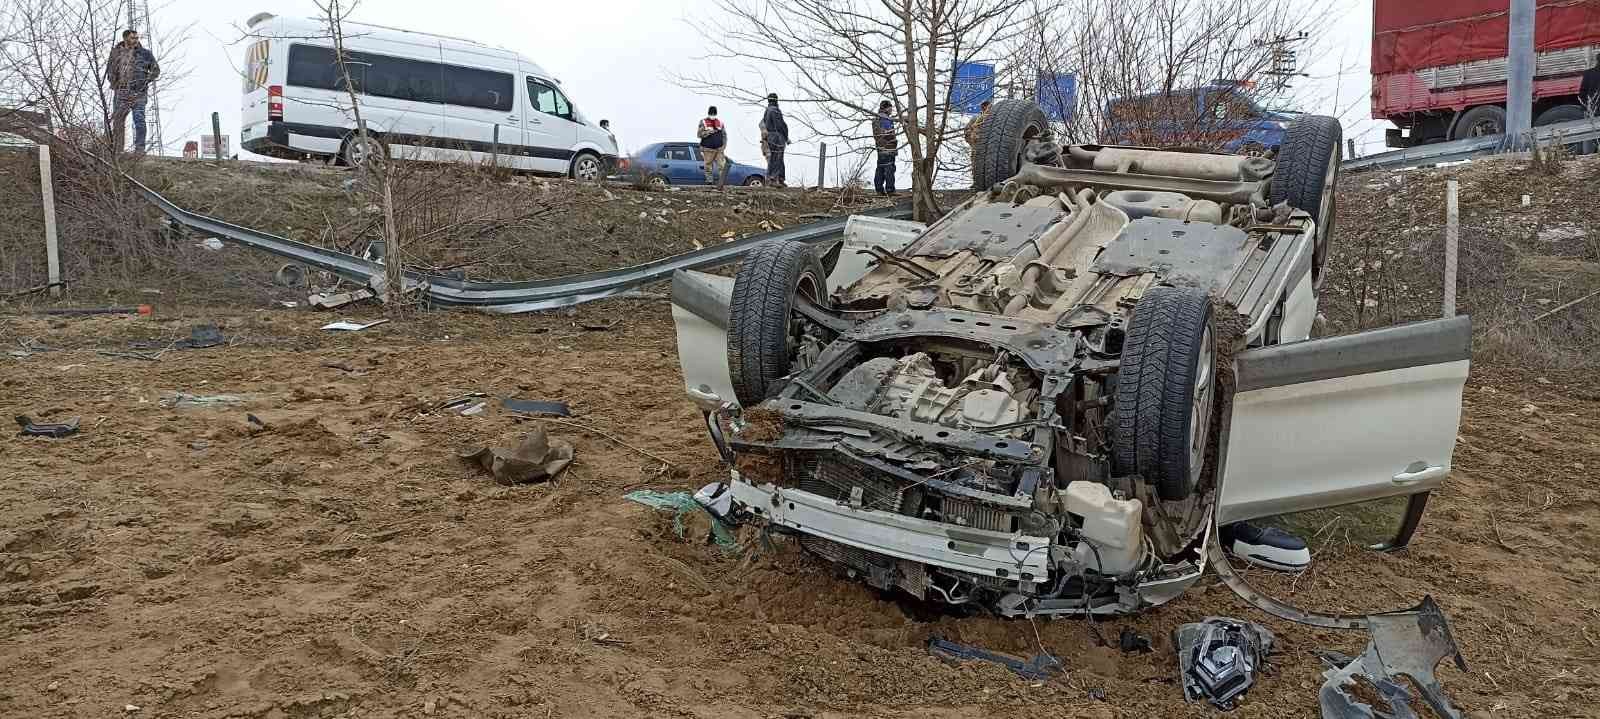 Elazığ’da otomobil bariyerlere çarparak takla attı: 6 yaralı #elazig